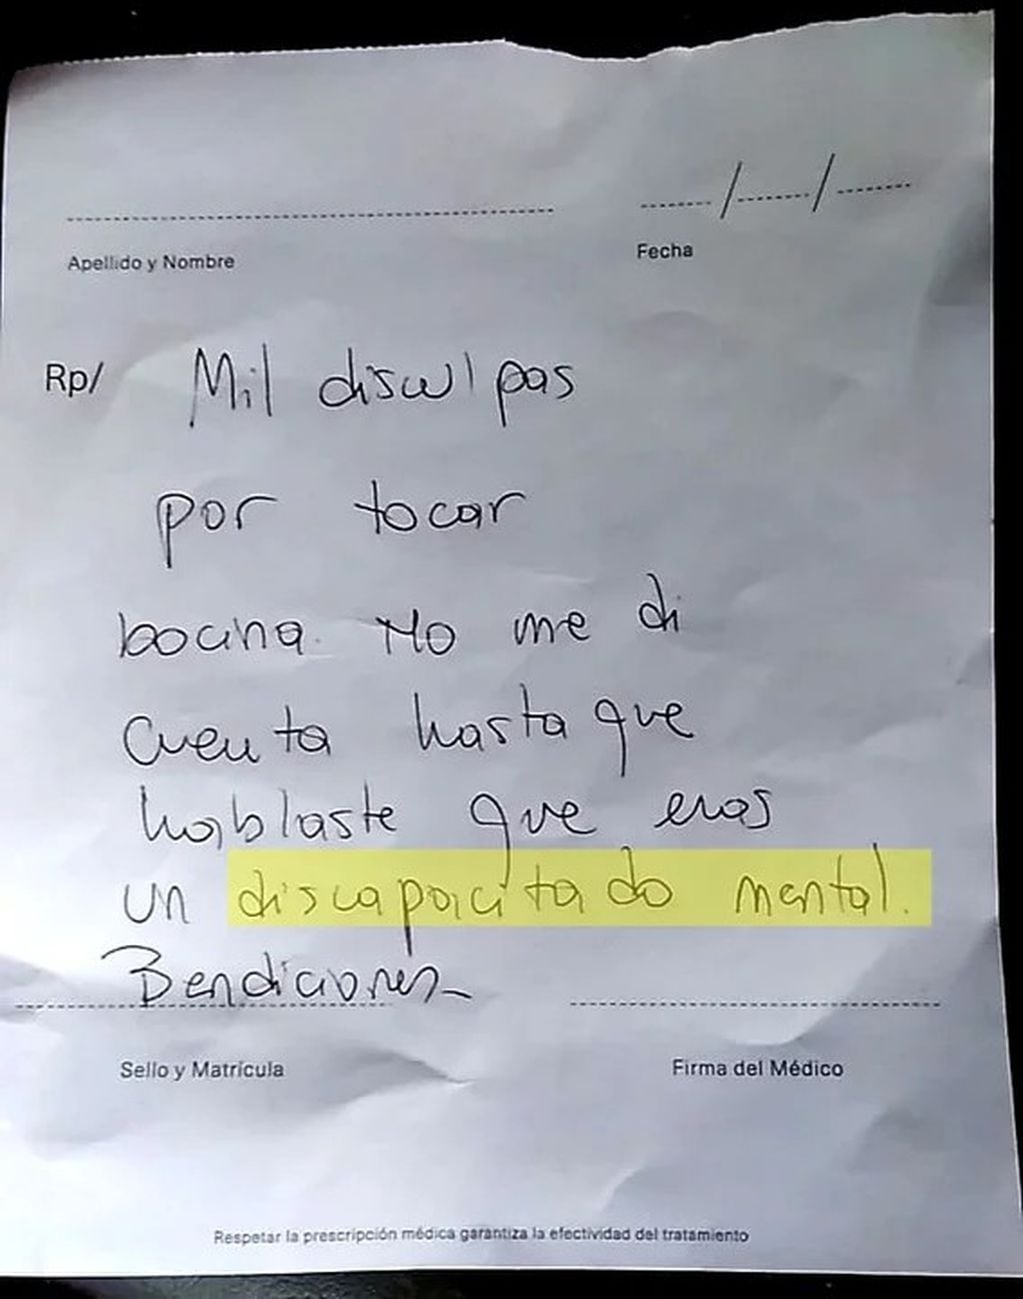 La nota que la madre de otro alumno le dejó en el parabrisas del coche.